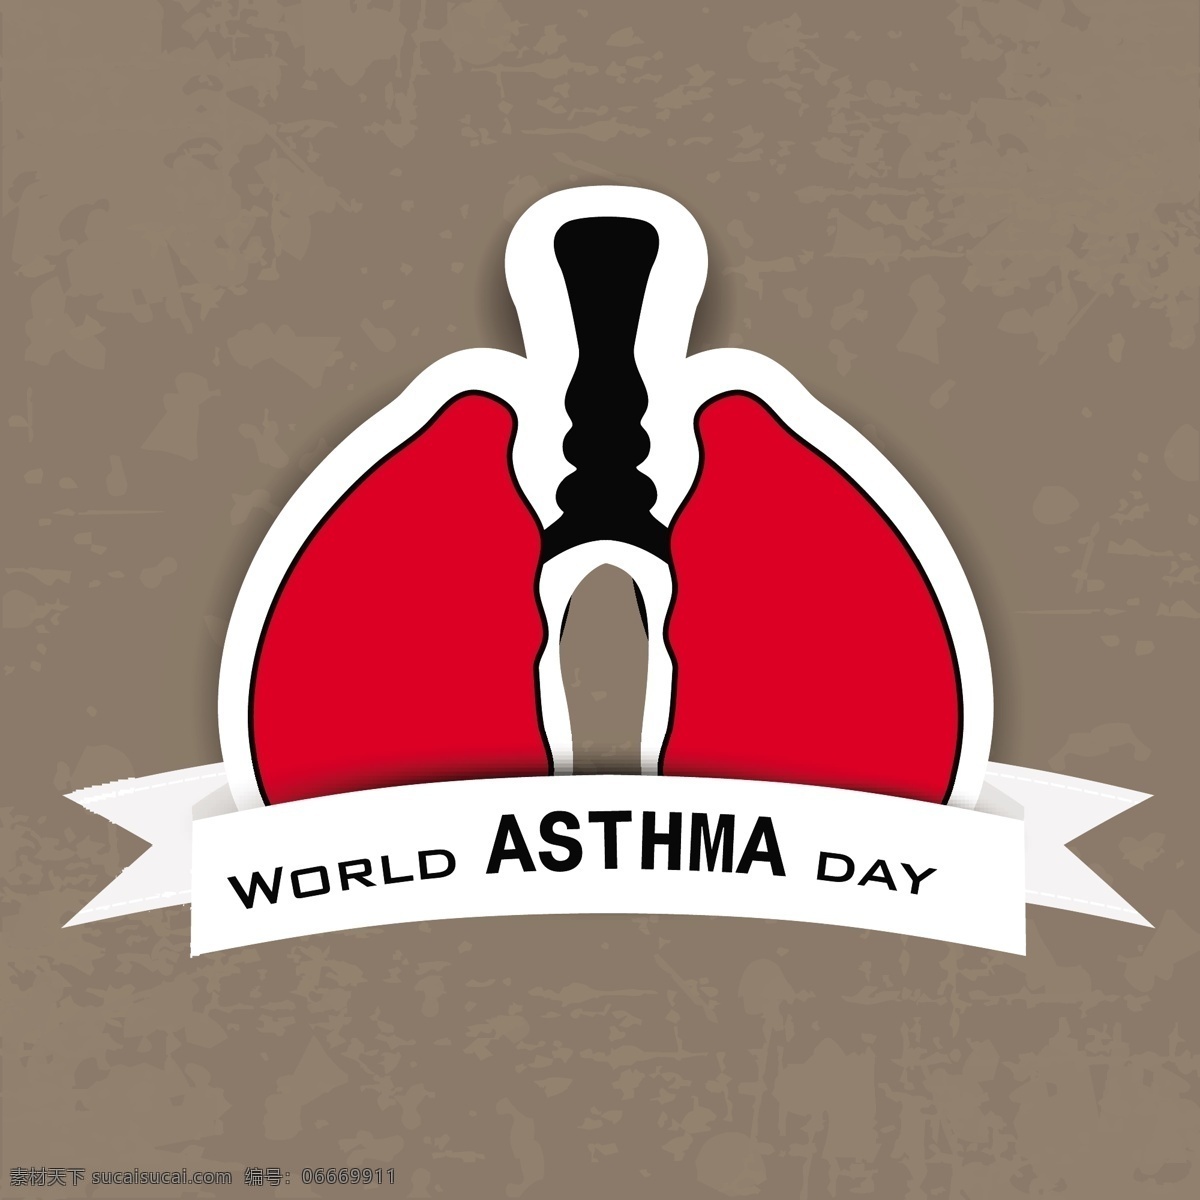 世界 哮喘 日 背景 灰色